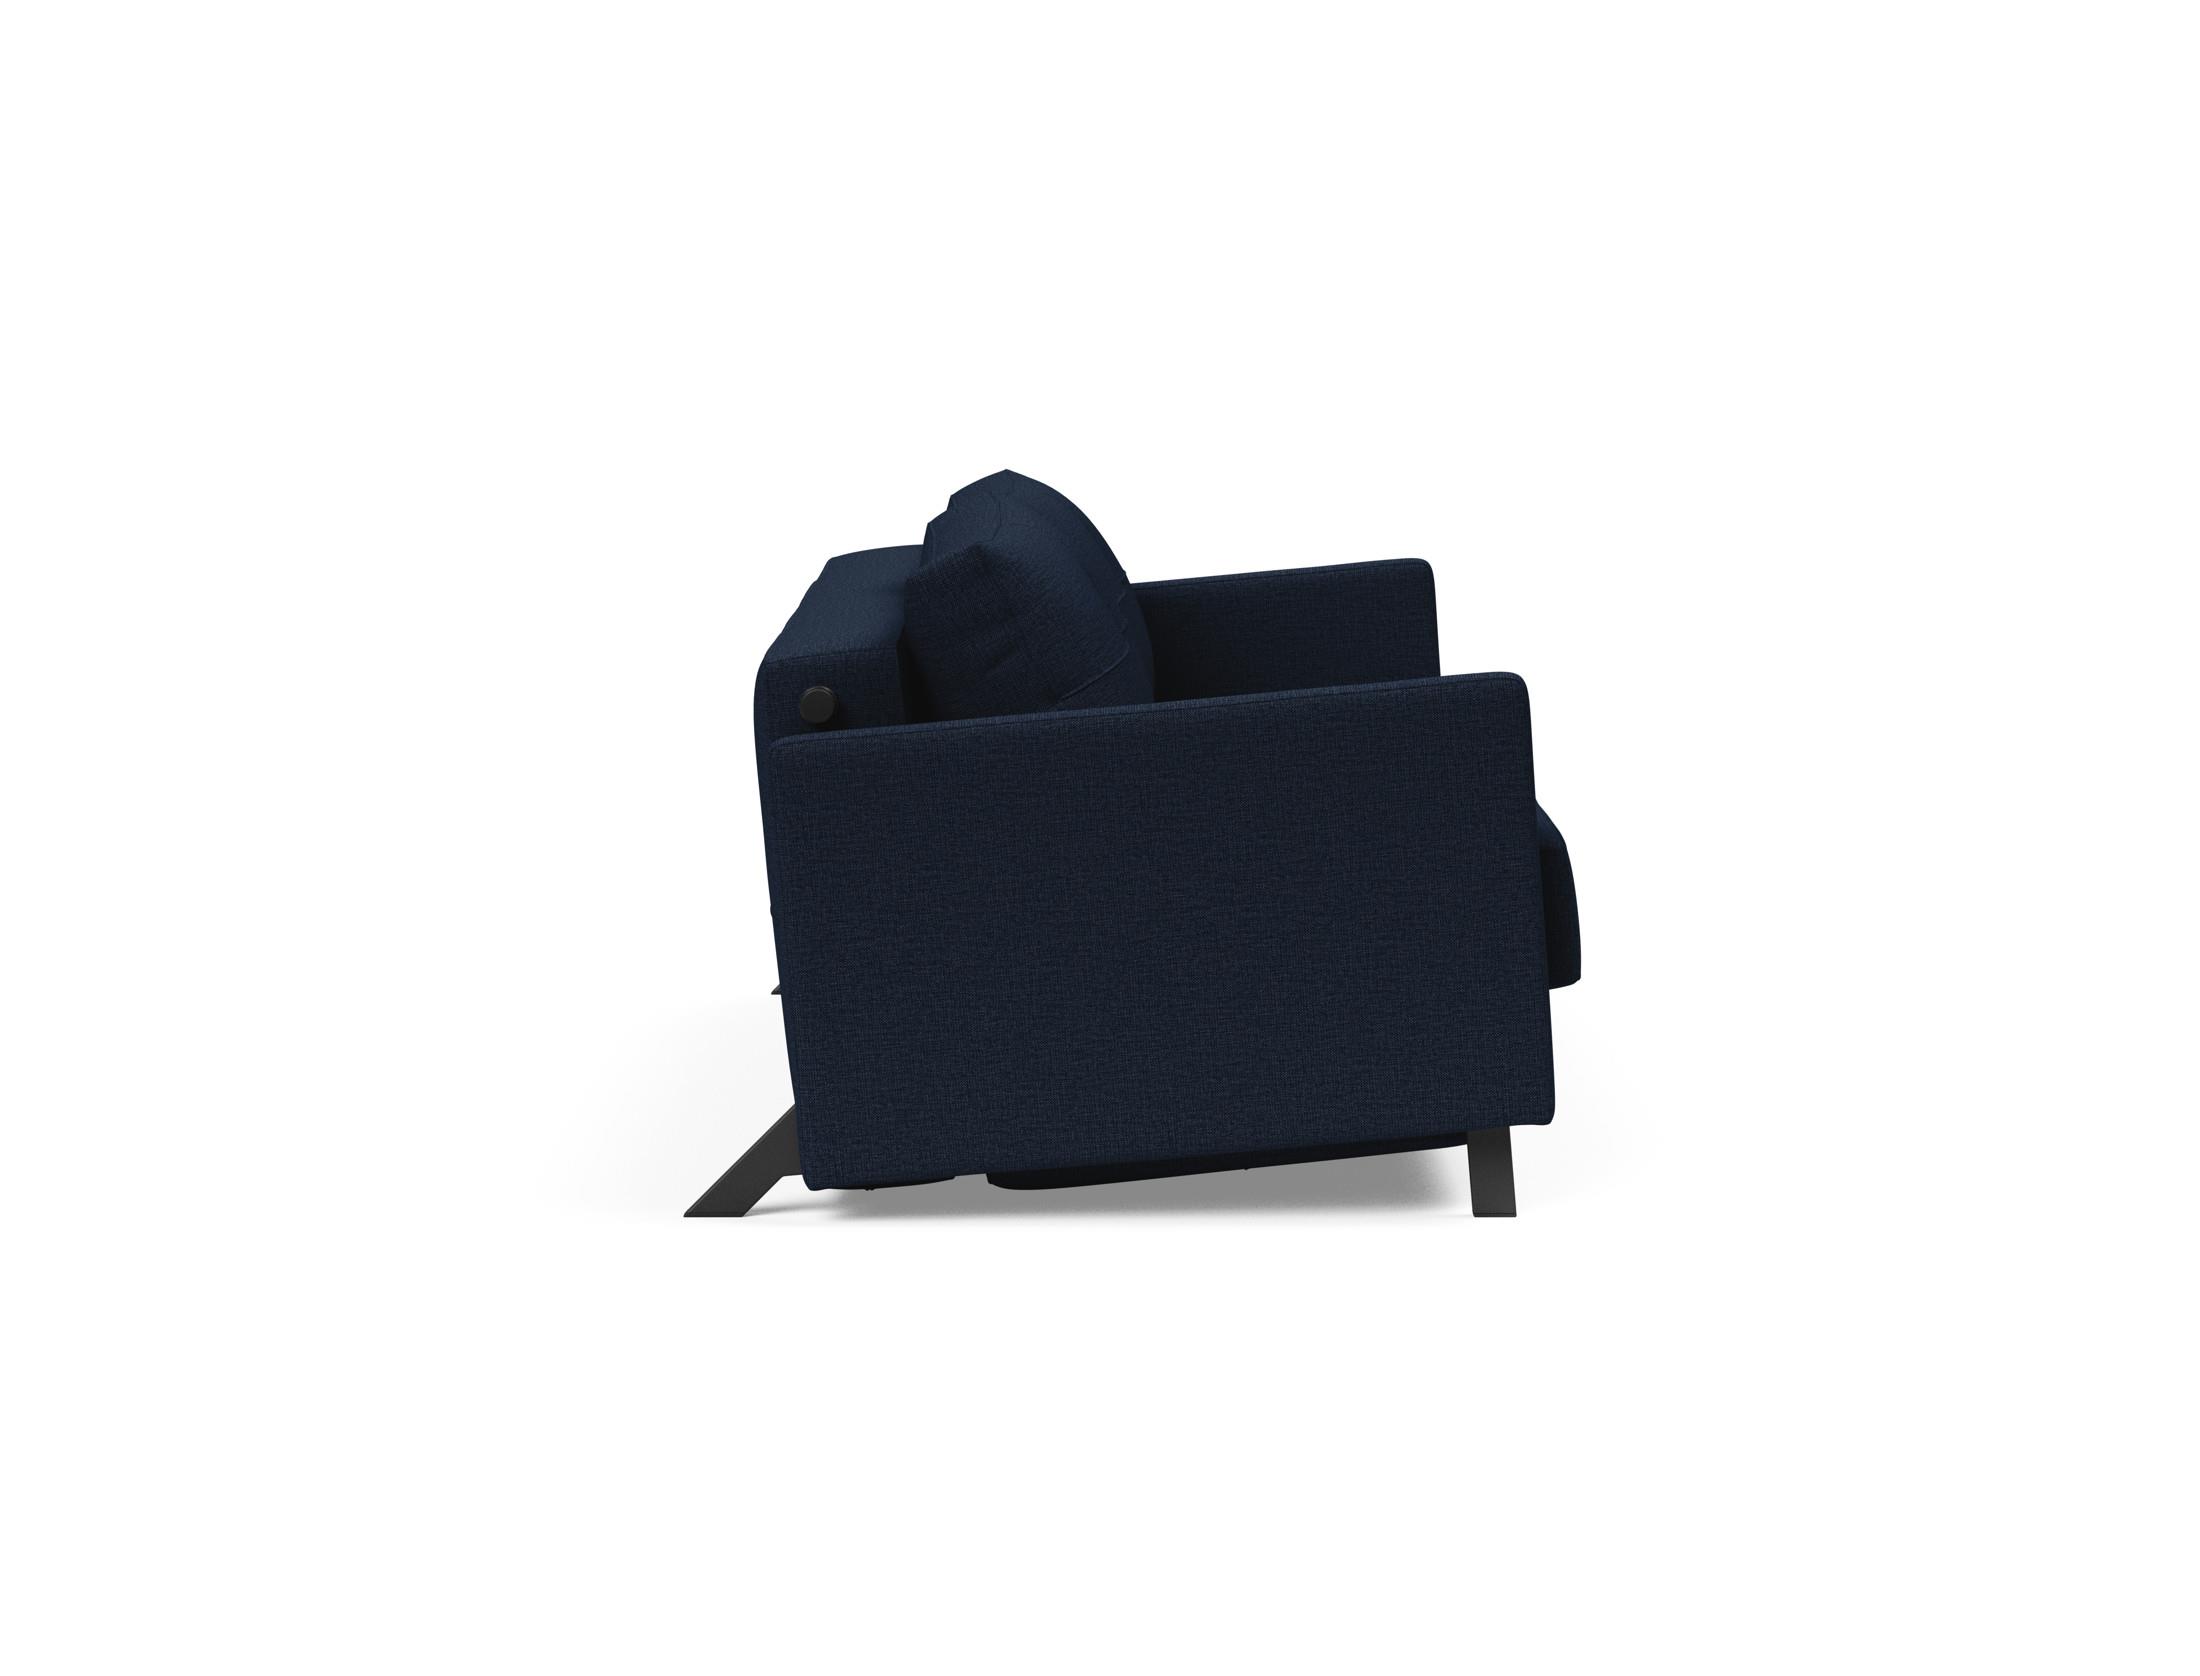 Кресло Cubed Deluxe. Innovation Cubed 140 528. Диван sofa140 200. Диван Cube 10654 ткань.